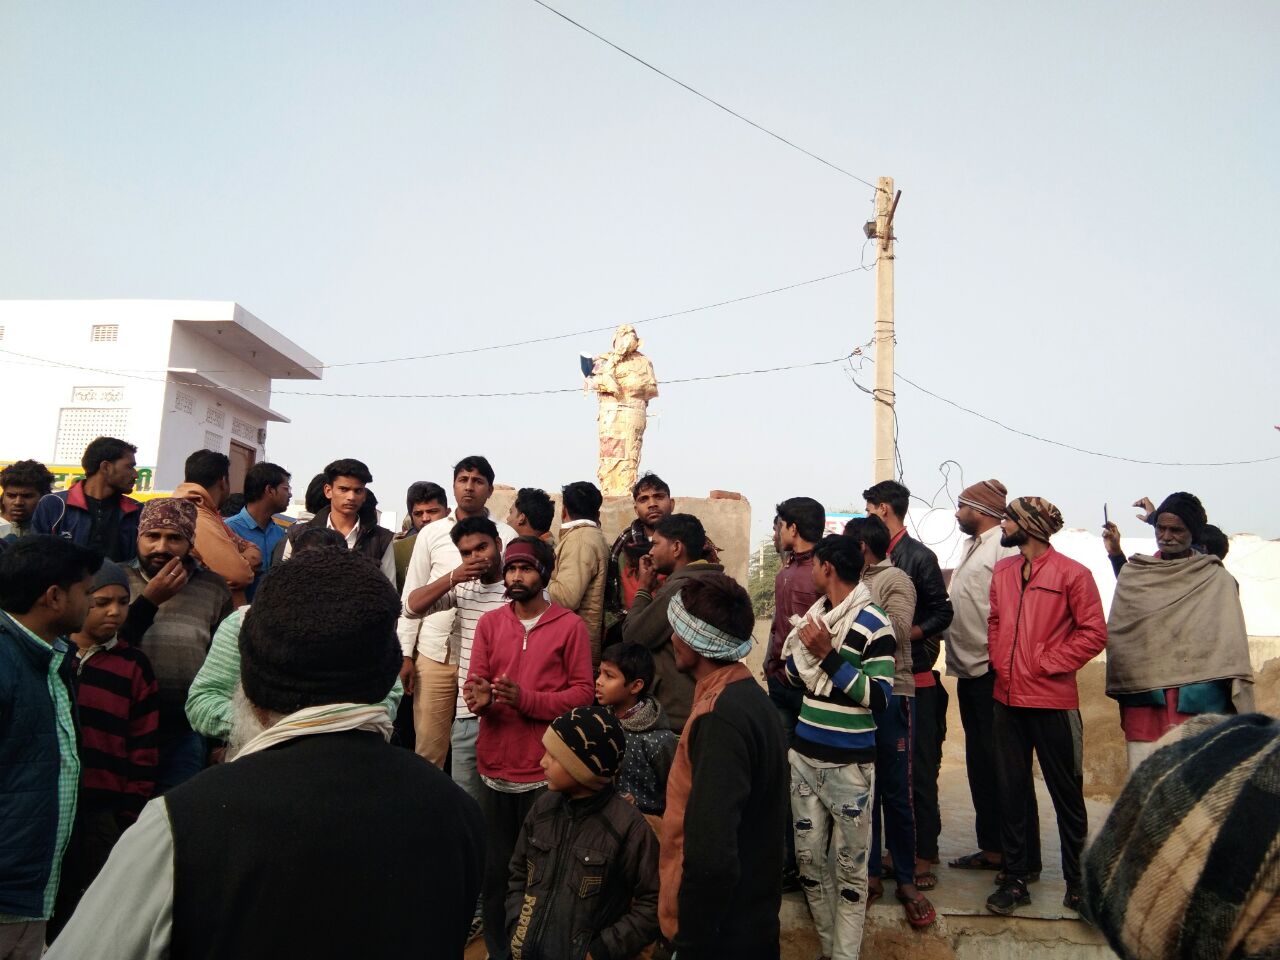 जयपुर जिले के पावटा में बाबा साहेब अंबेडकर प्रतिमा को किया खंडित, सर्व समाज के
लोगों में आक्रोश